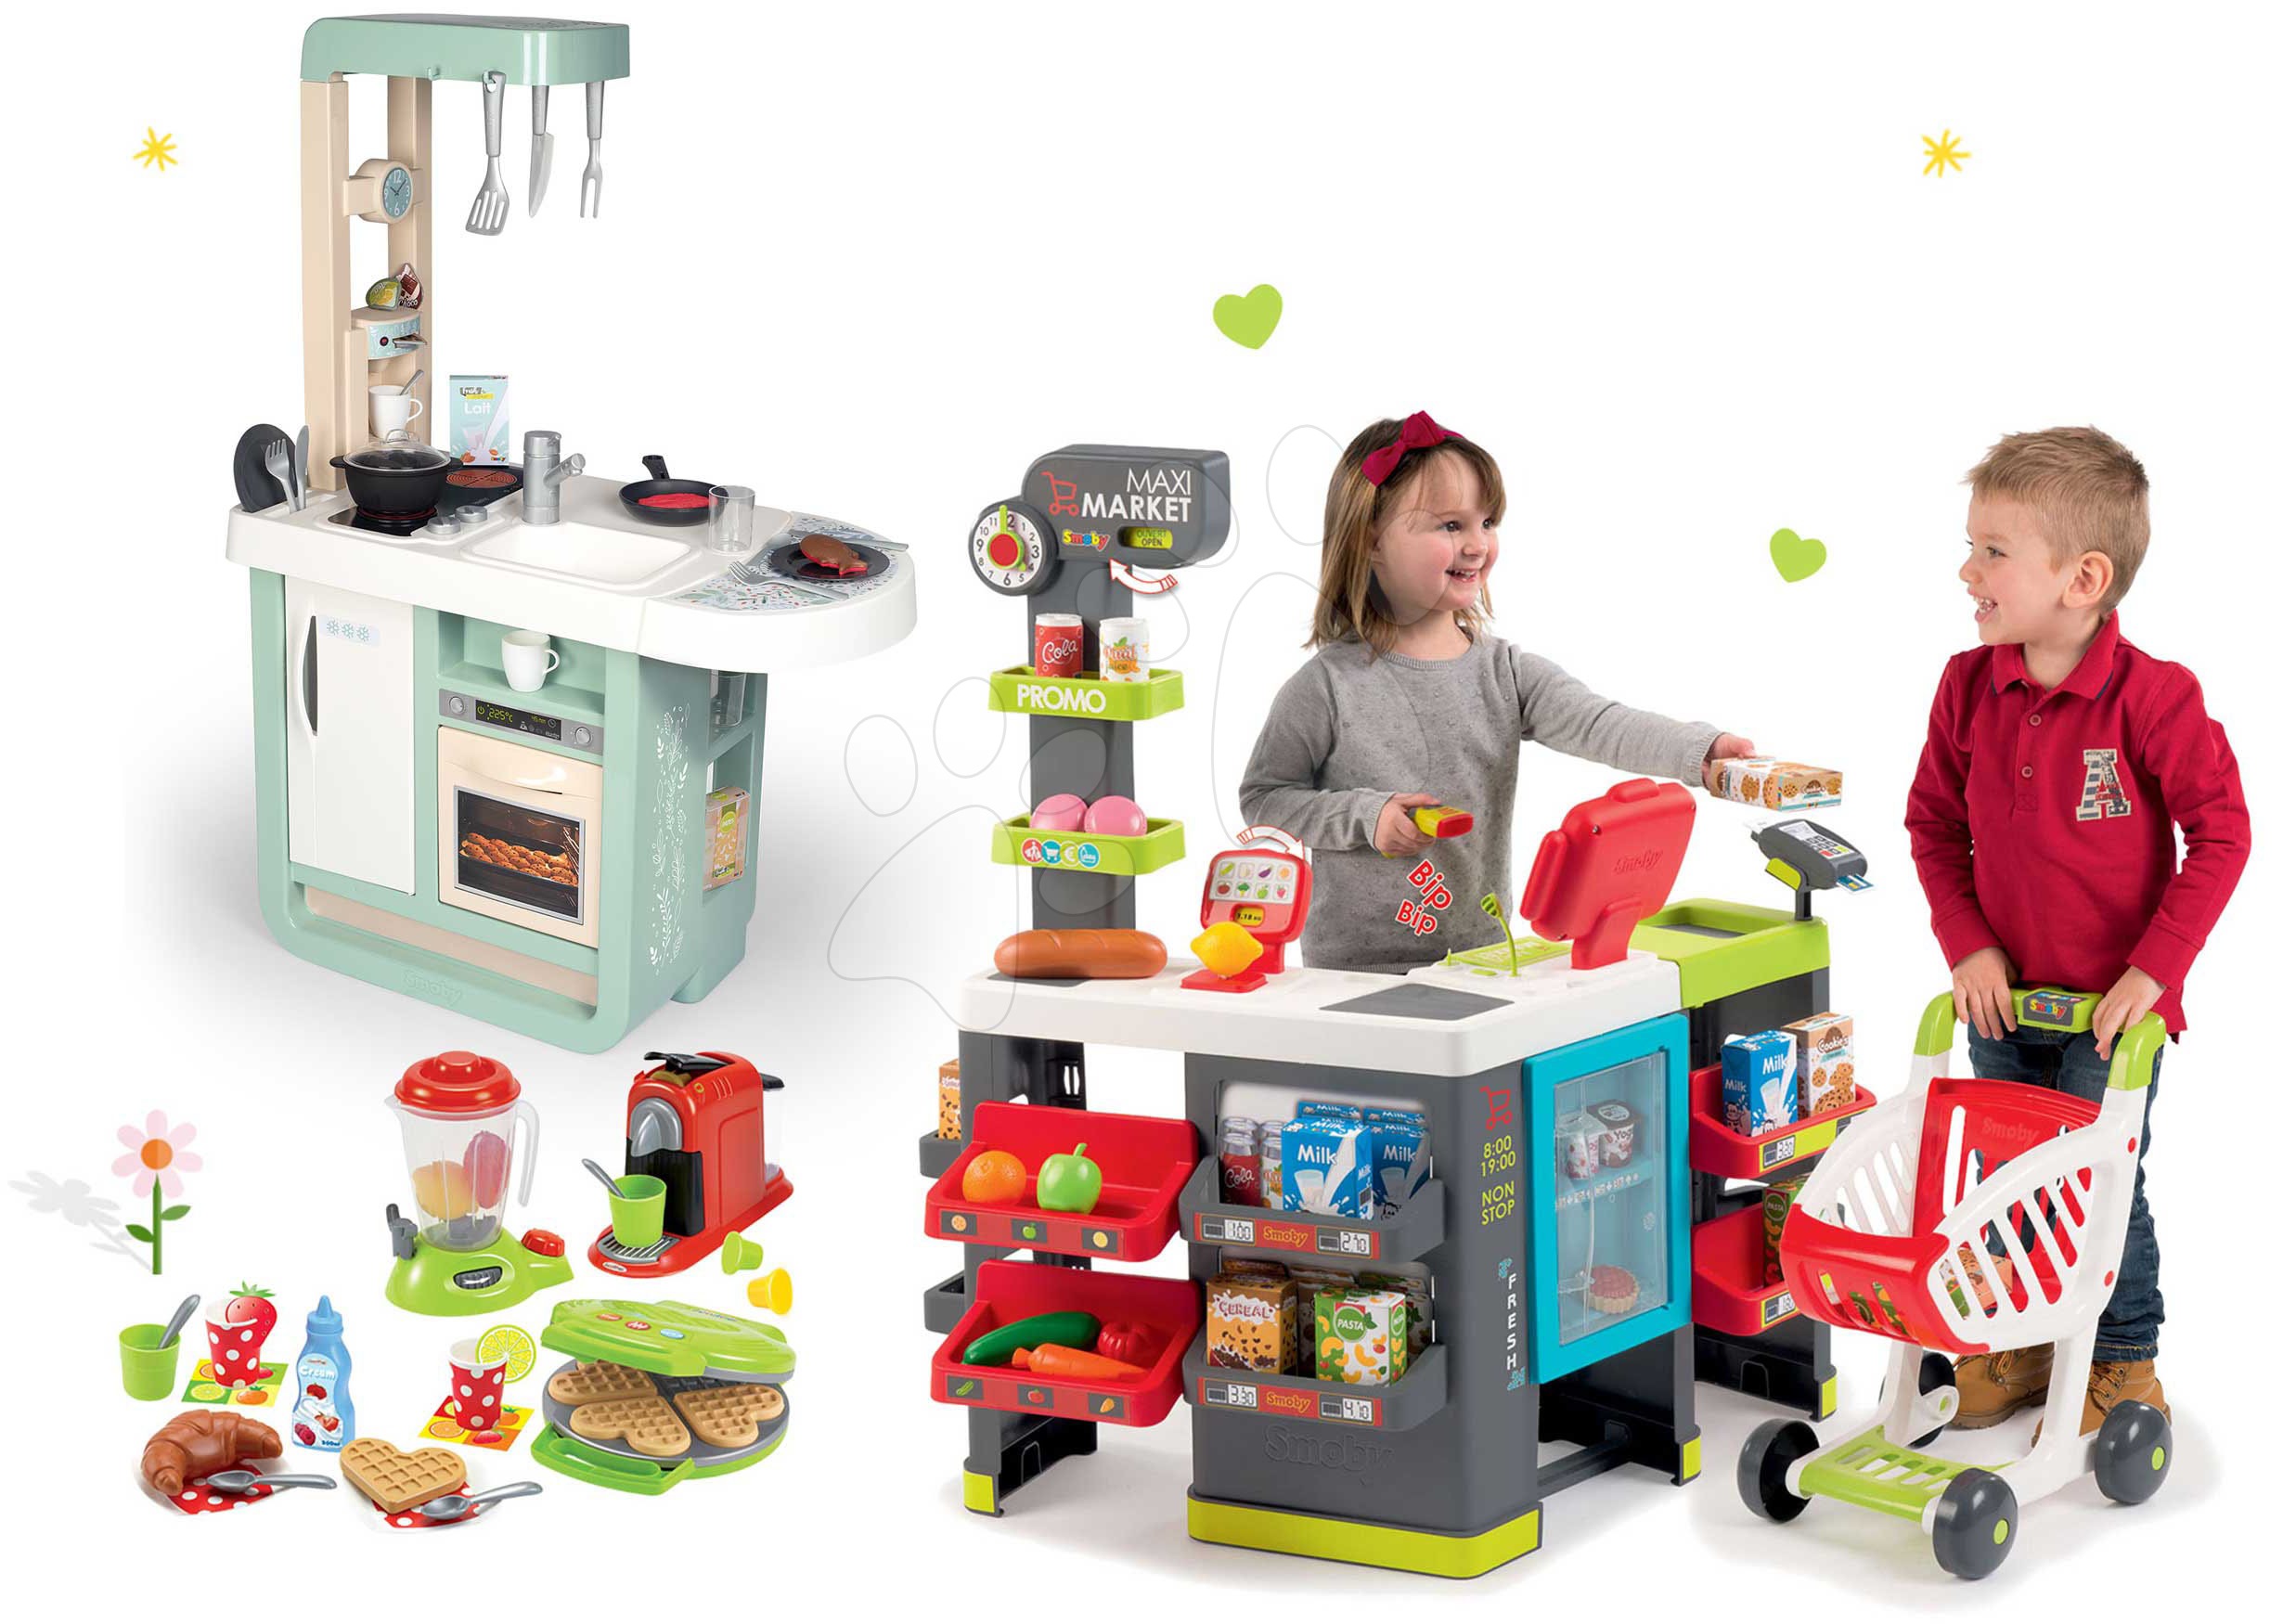 Obchody pre deti sety - Set obchod zmiešaný tovar Maximarket Smoby a kuchynka Cherry zvuková a vaflovač s mixérom a kávovarom